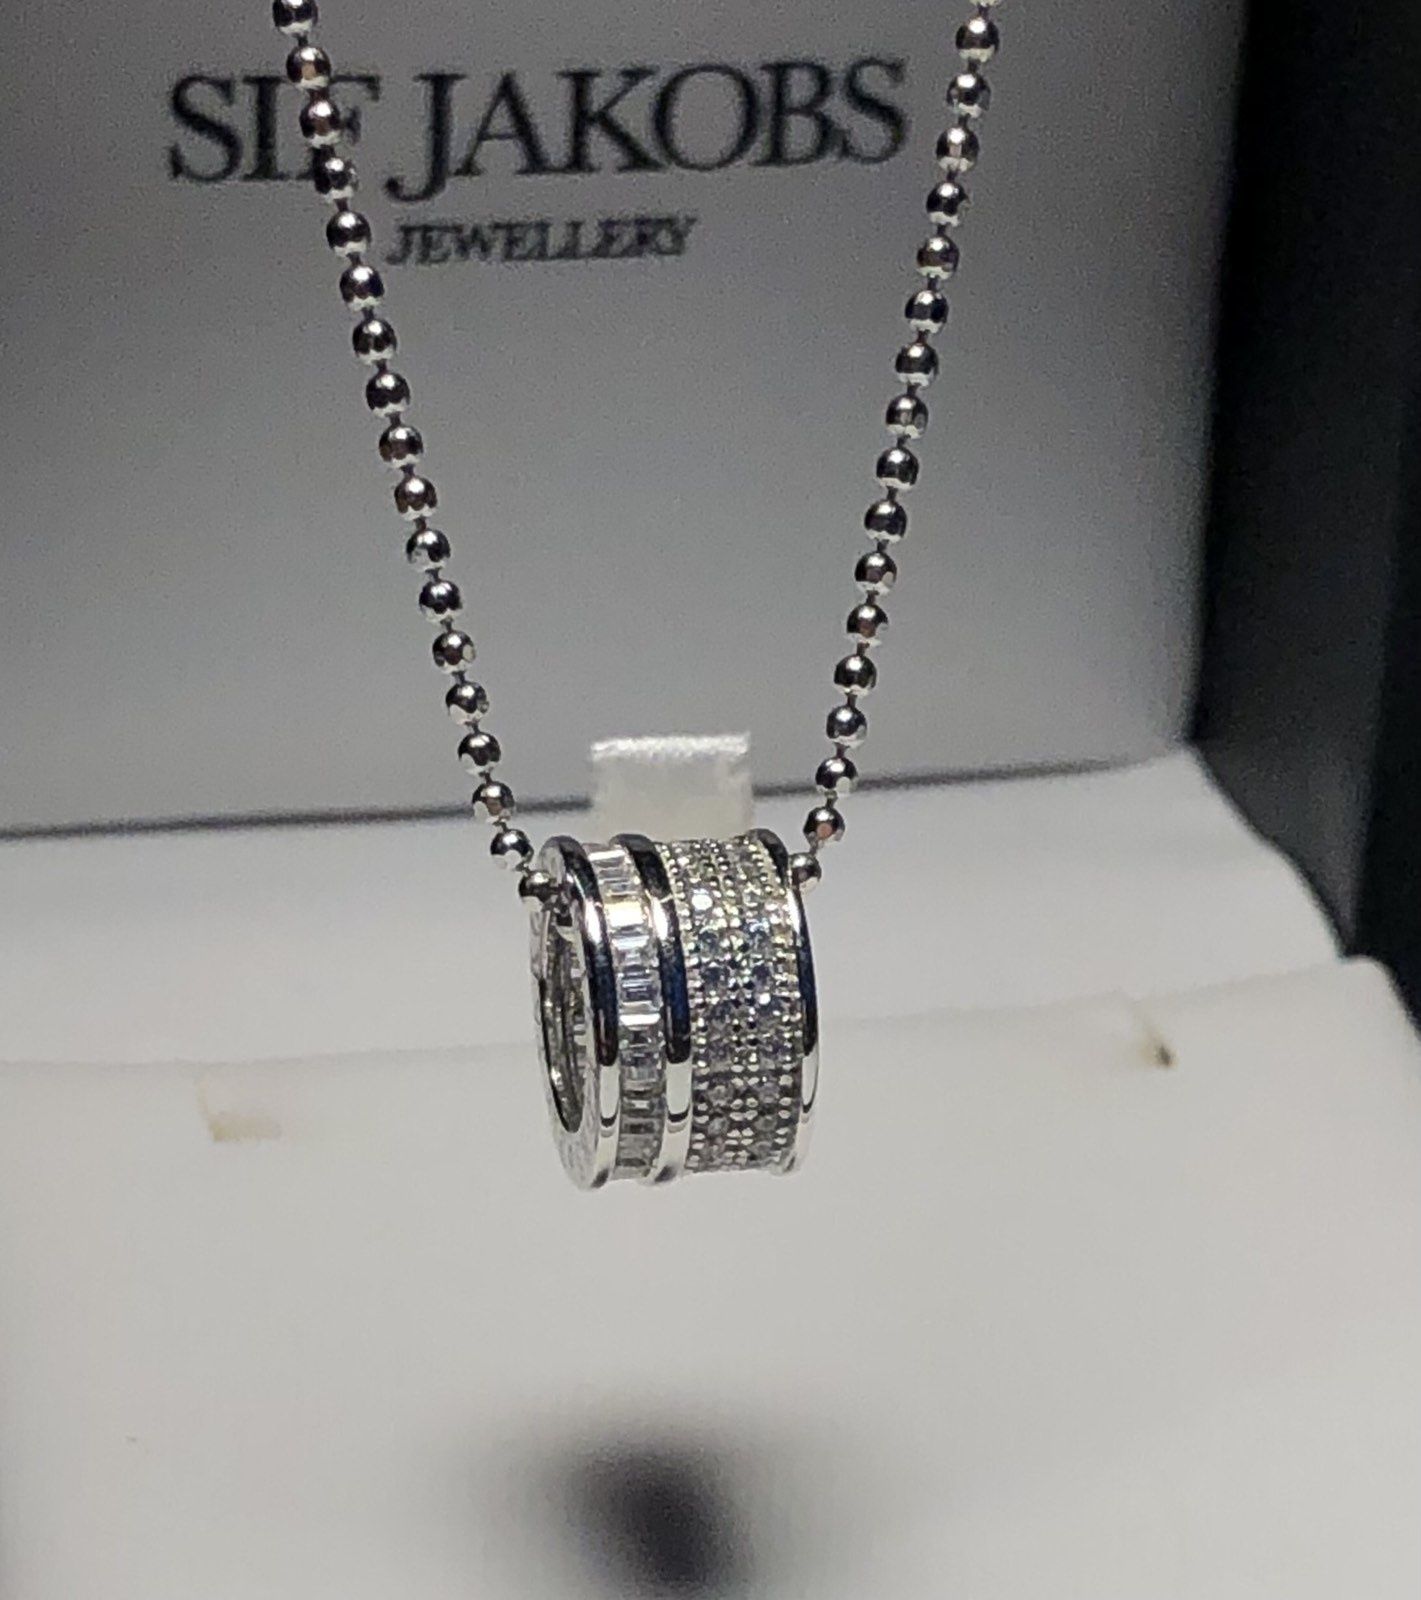 Sif Jakobs Jewellery срібна цепочка з кулоном, цирконій